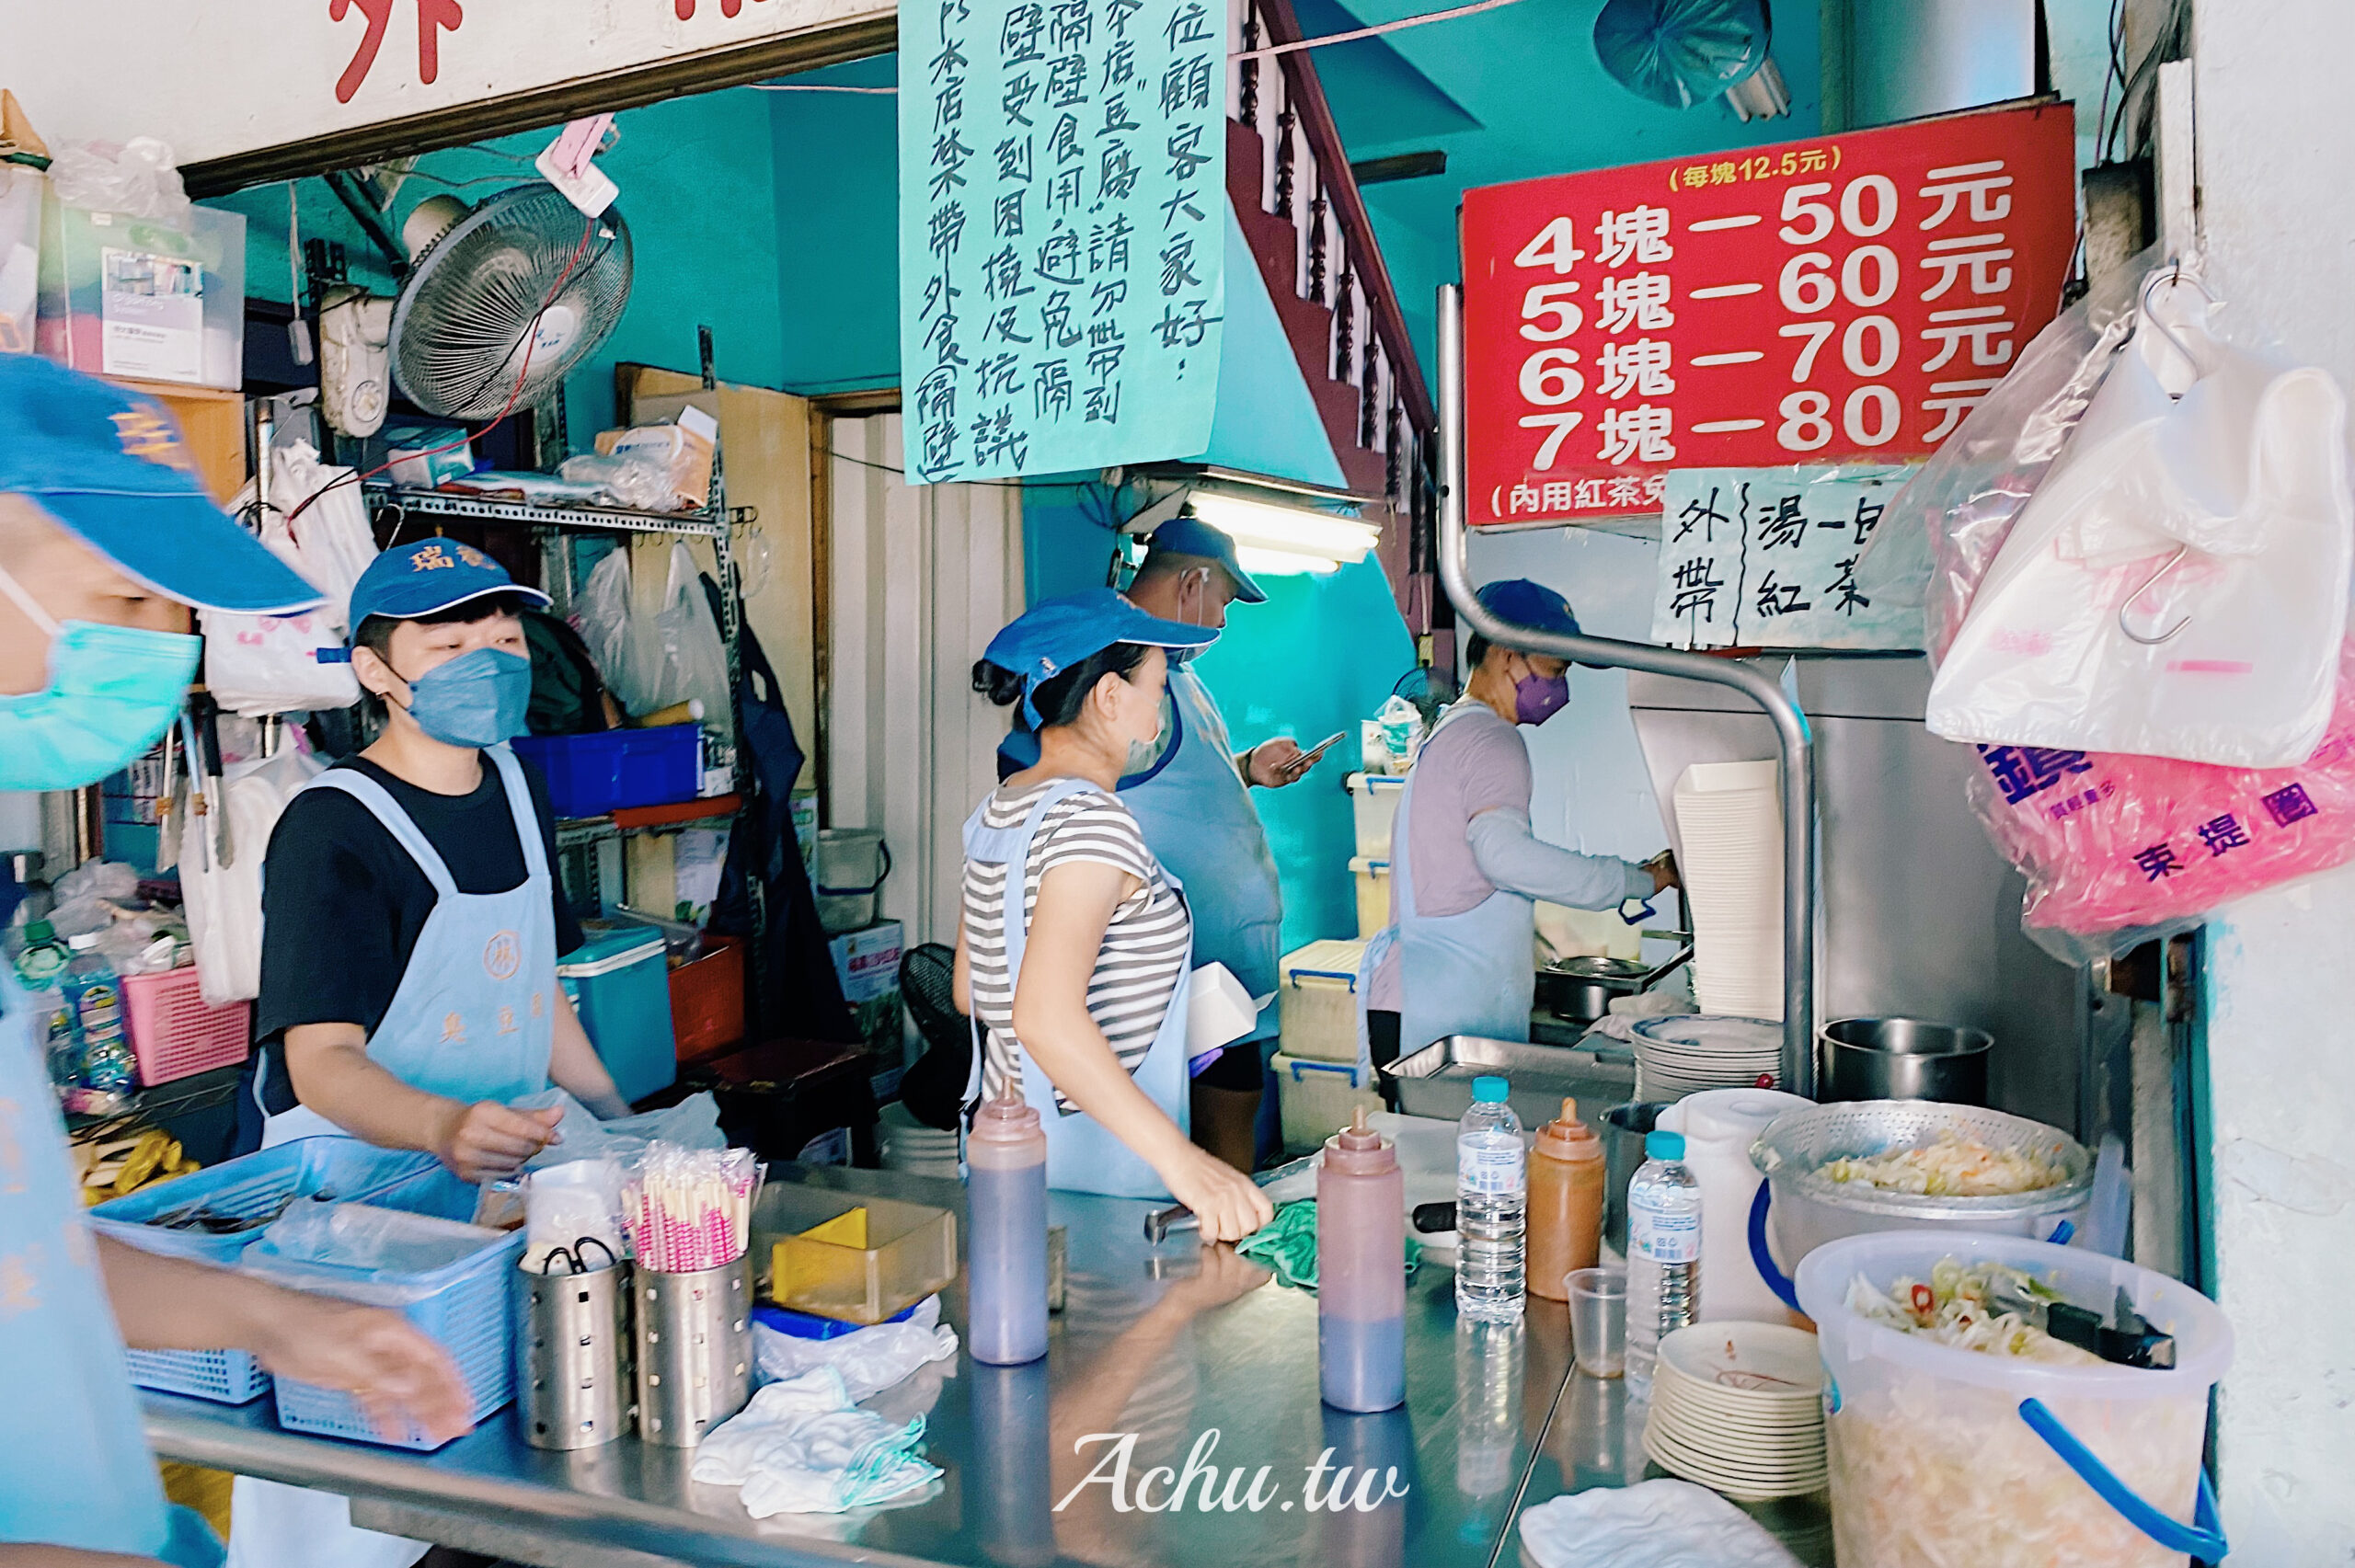 【台中東區美食】花蓮水尾臭豆腐 台中自由店 有夠臭 每天只賣五個半小時 (菜單)